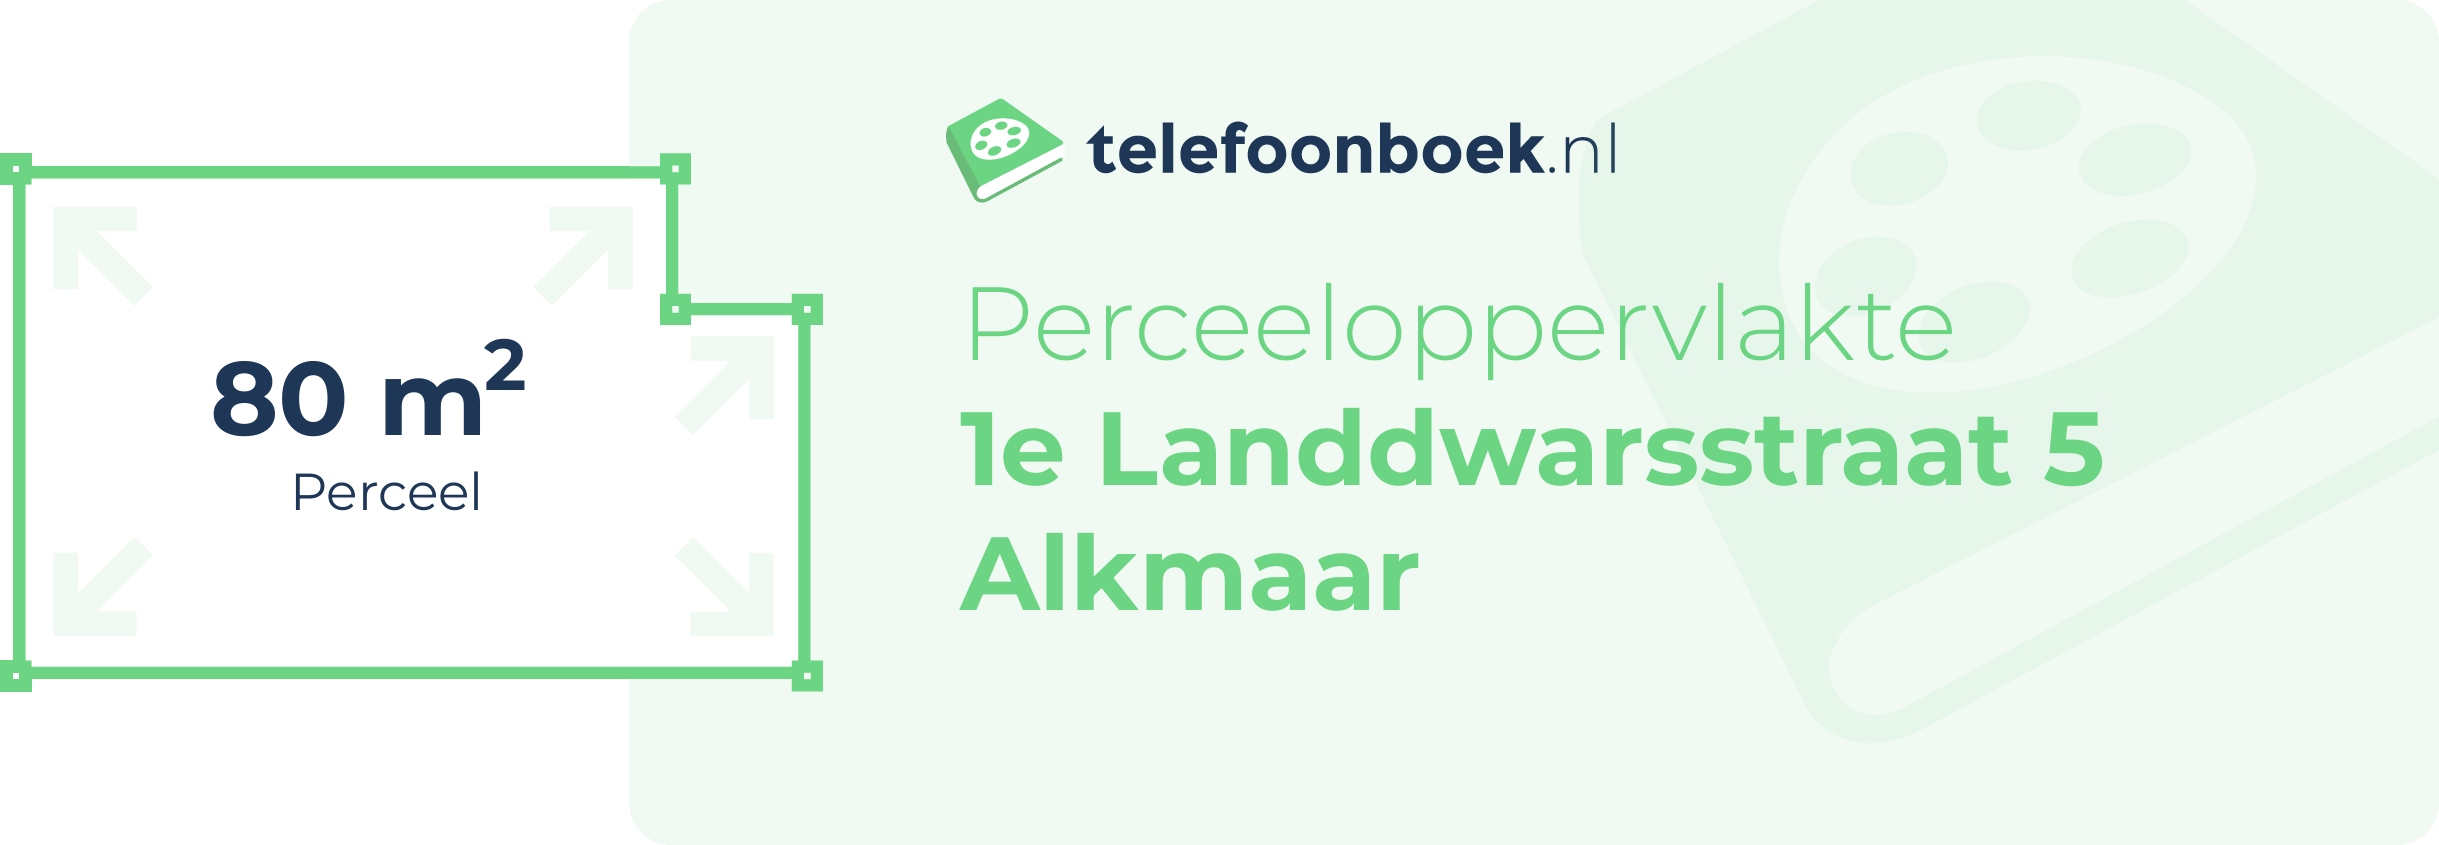 Perceeloppervlakte 1e Landdwarsstraat 5 Alkmaar